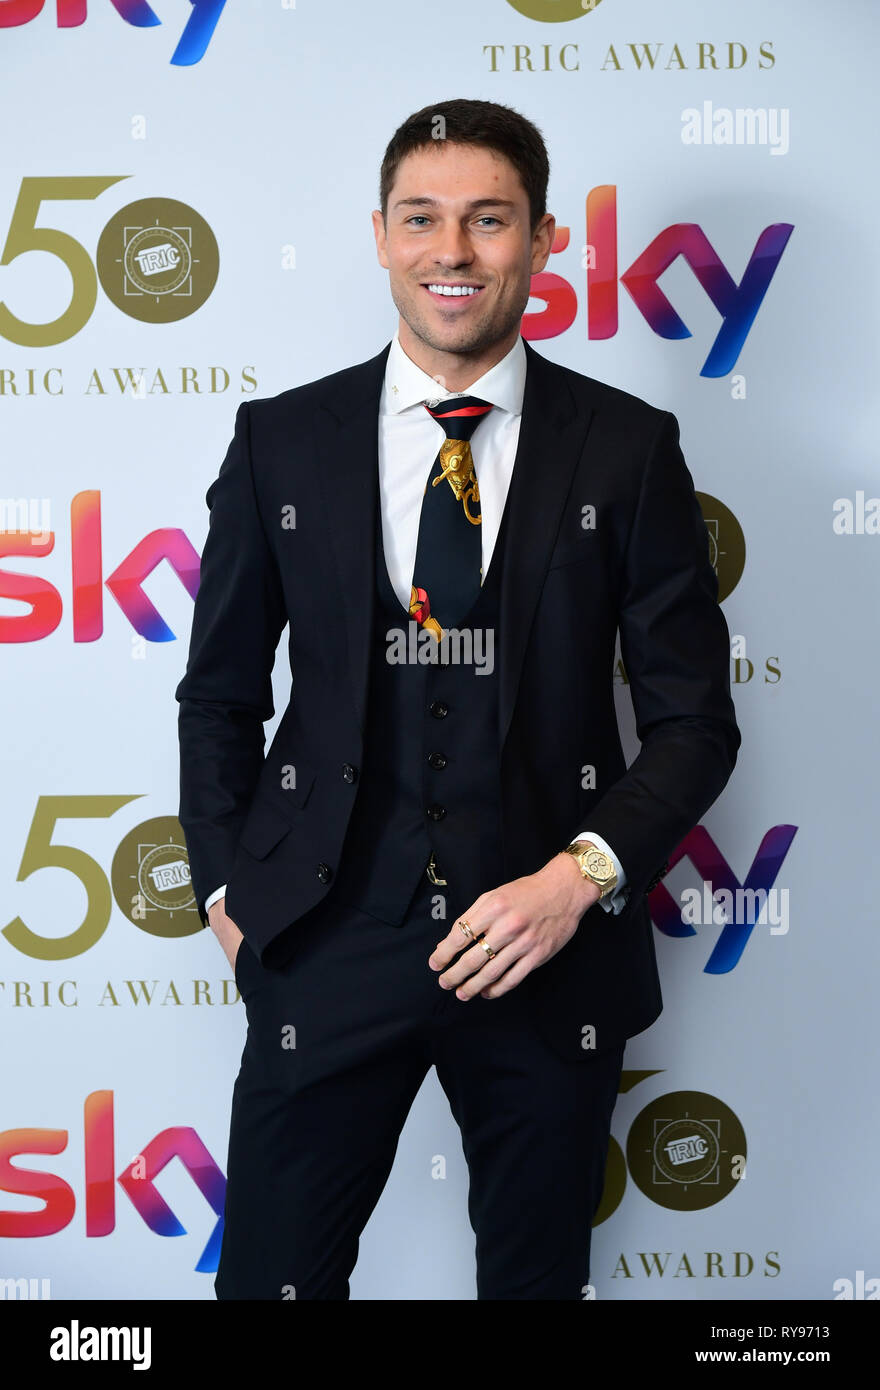 Joey Essex frequentando il TRIC Awards 2019 cinquantesimo compleanno celebrazione svoltasi presso il Grosvenor House Hotel di Londra. Foto Stock